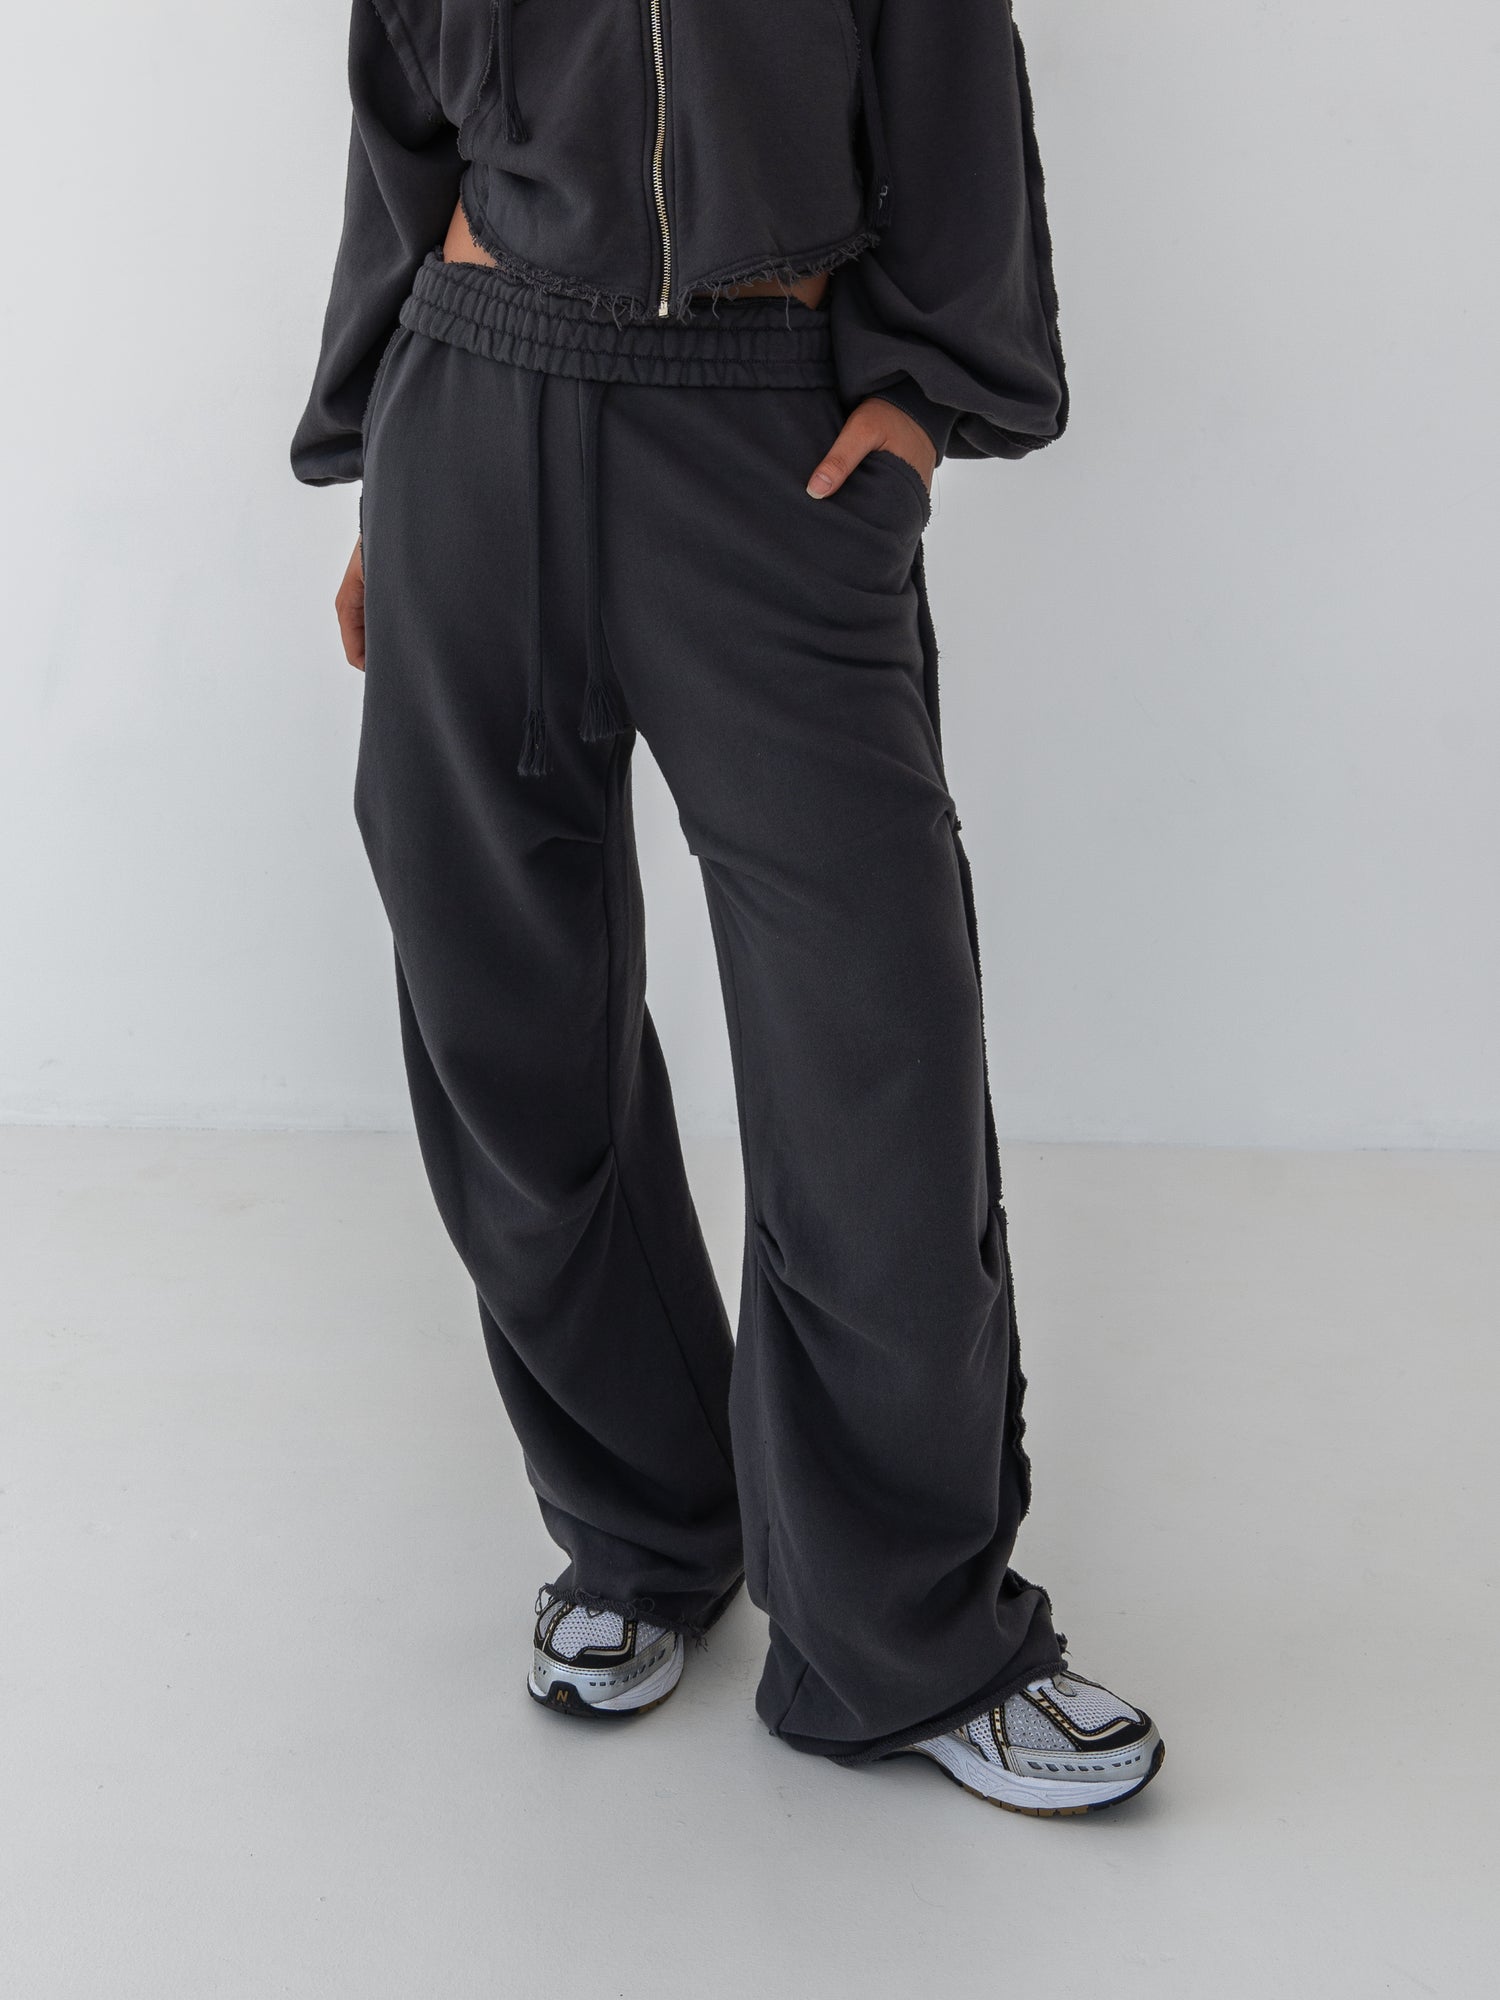 Sasha Open Seam Pin Tuck Sweatpants / Charcoal